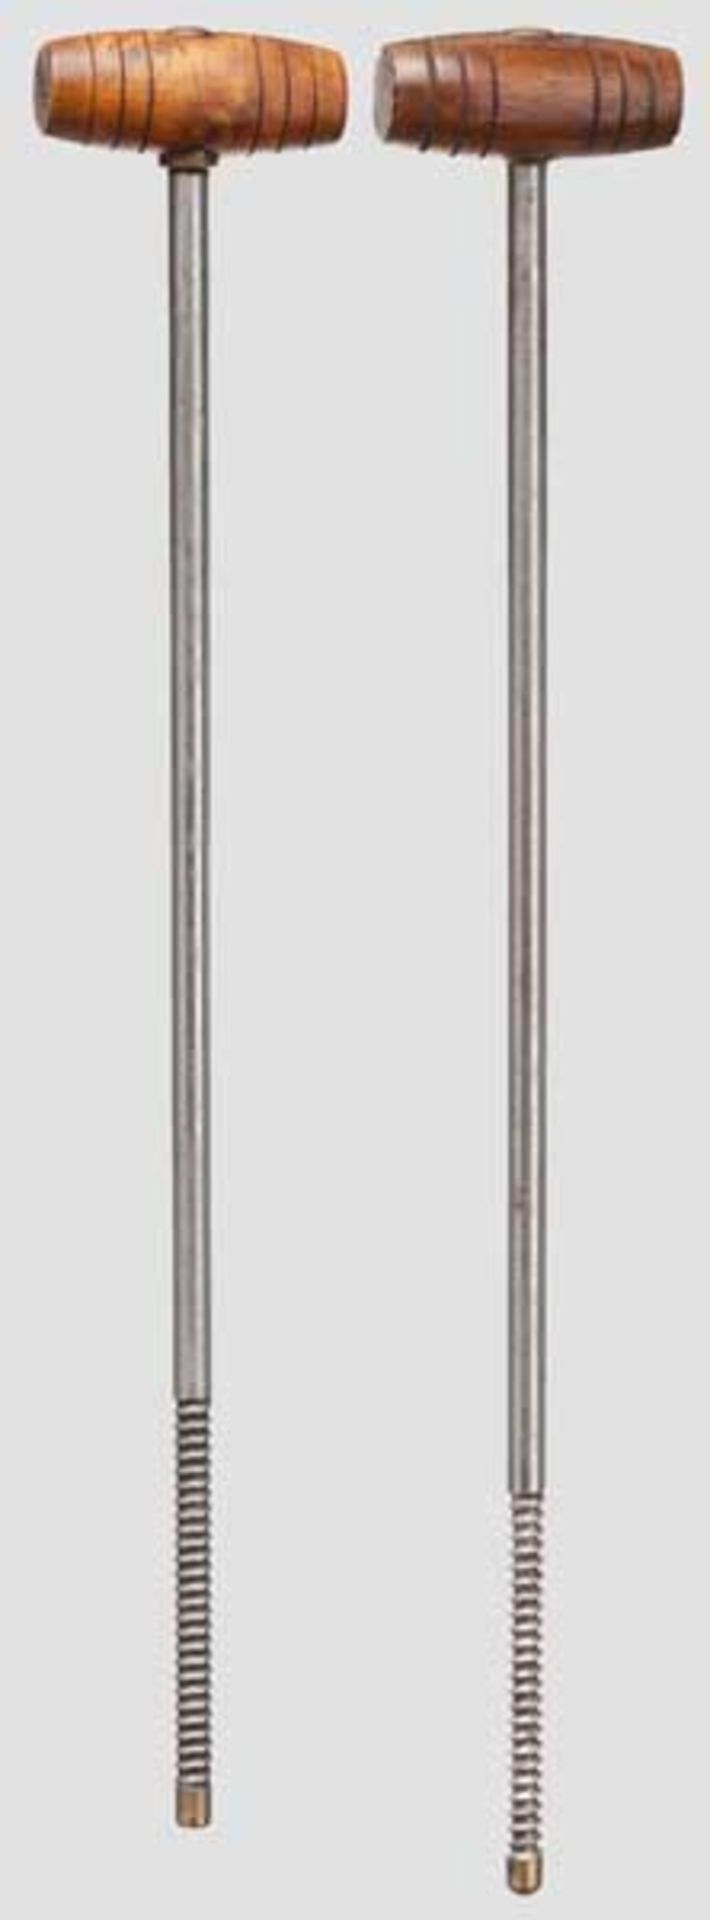 Zwei Wischstöcke zur langen P. 08 Jeweils aus 5,5 mm starkem Stahldraht, Länge ca. 235 mm, Gewinde